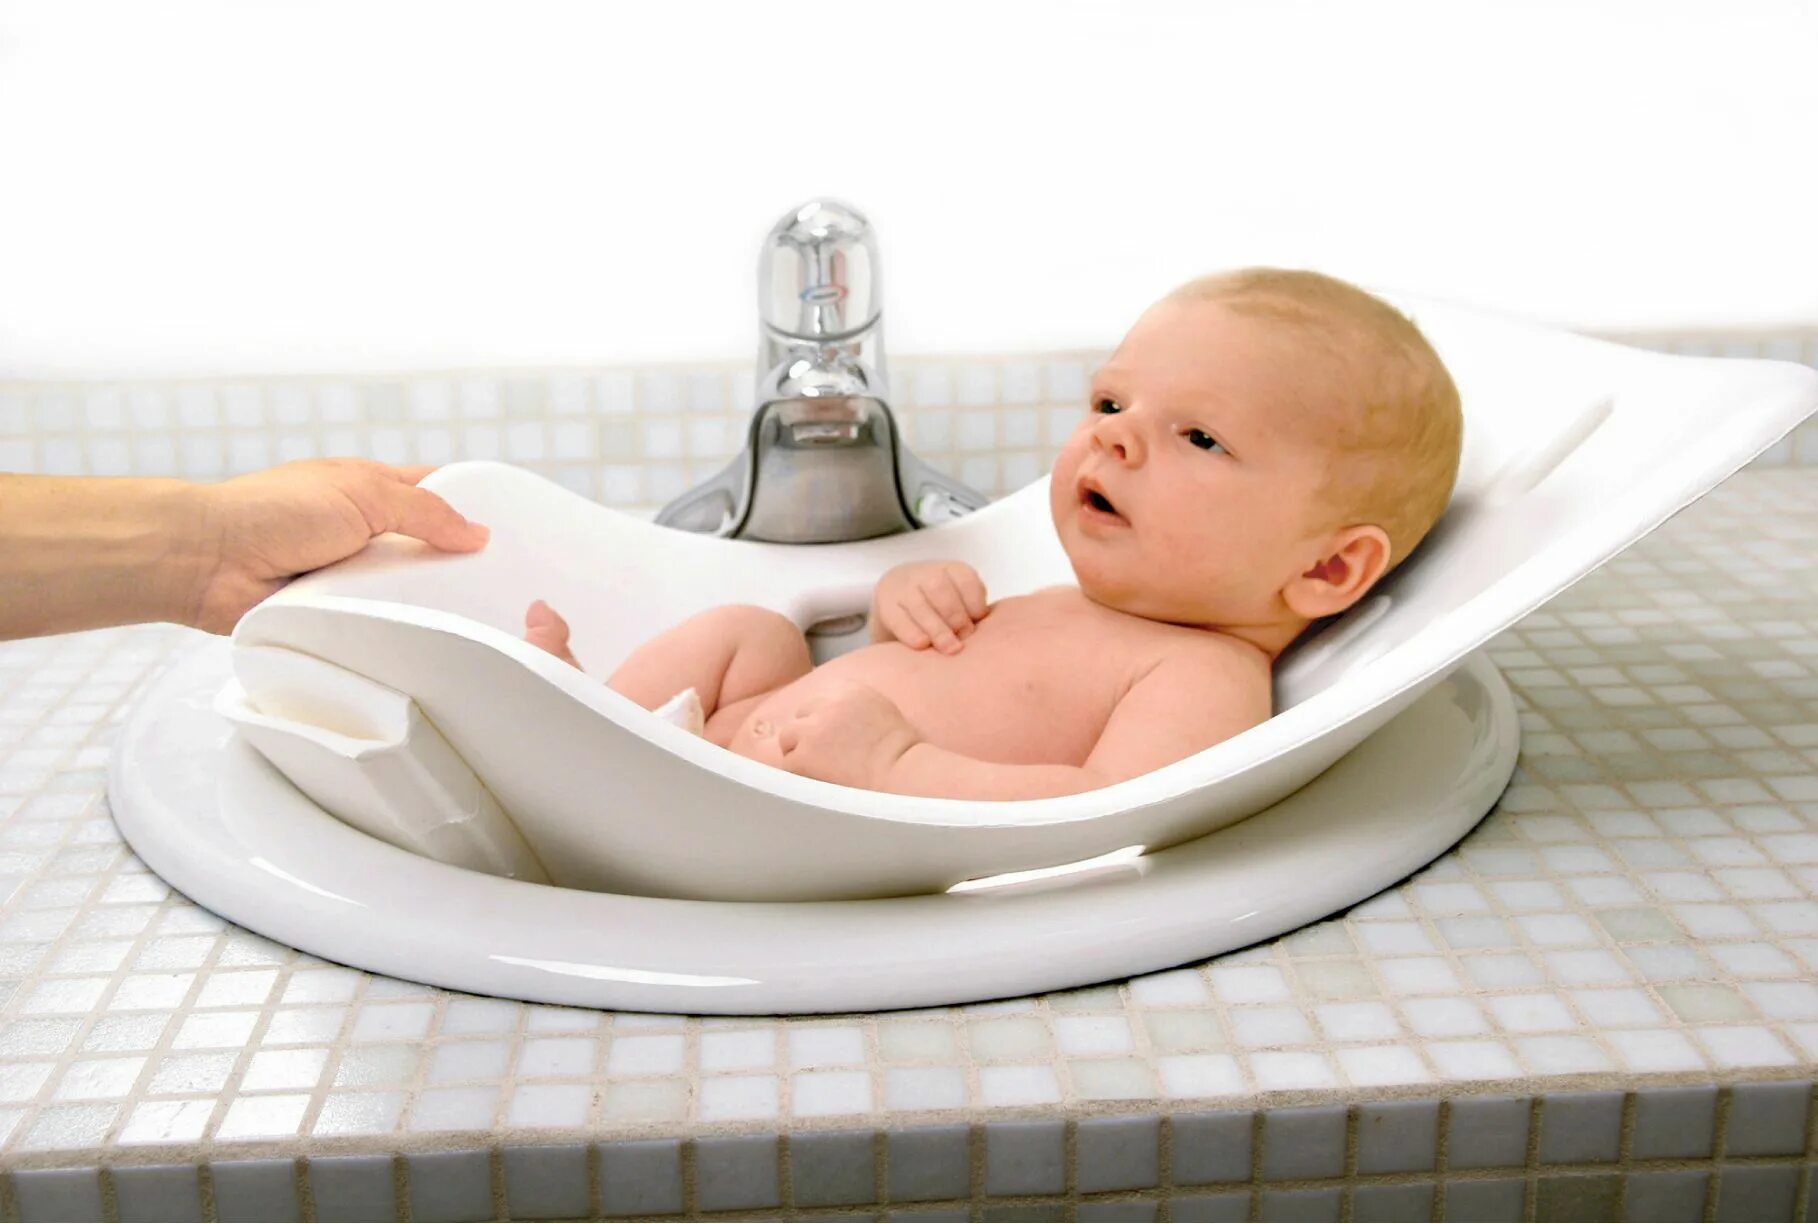 Ванночка Puj для раковины. Ванночка для купания детей. Ванночка для новорожденных. Ванночка для новорожденных в душевую кабину. Подмывание новорожденного мальчика